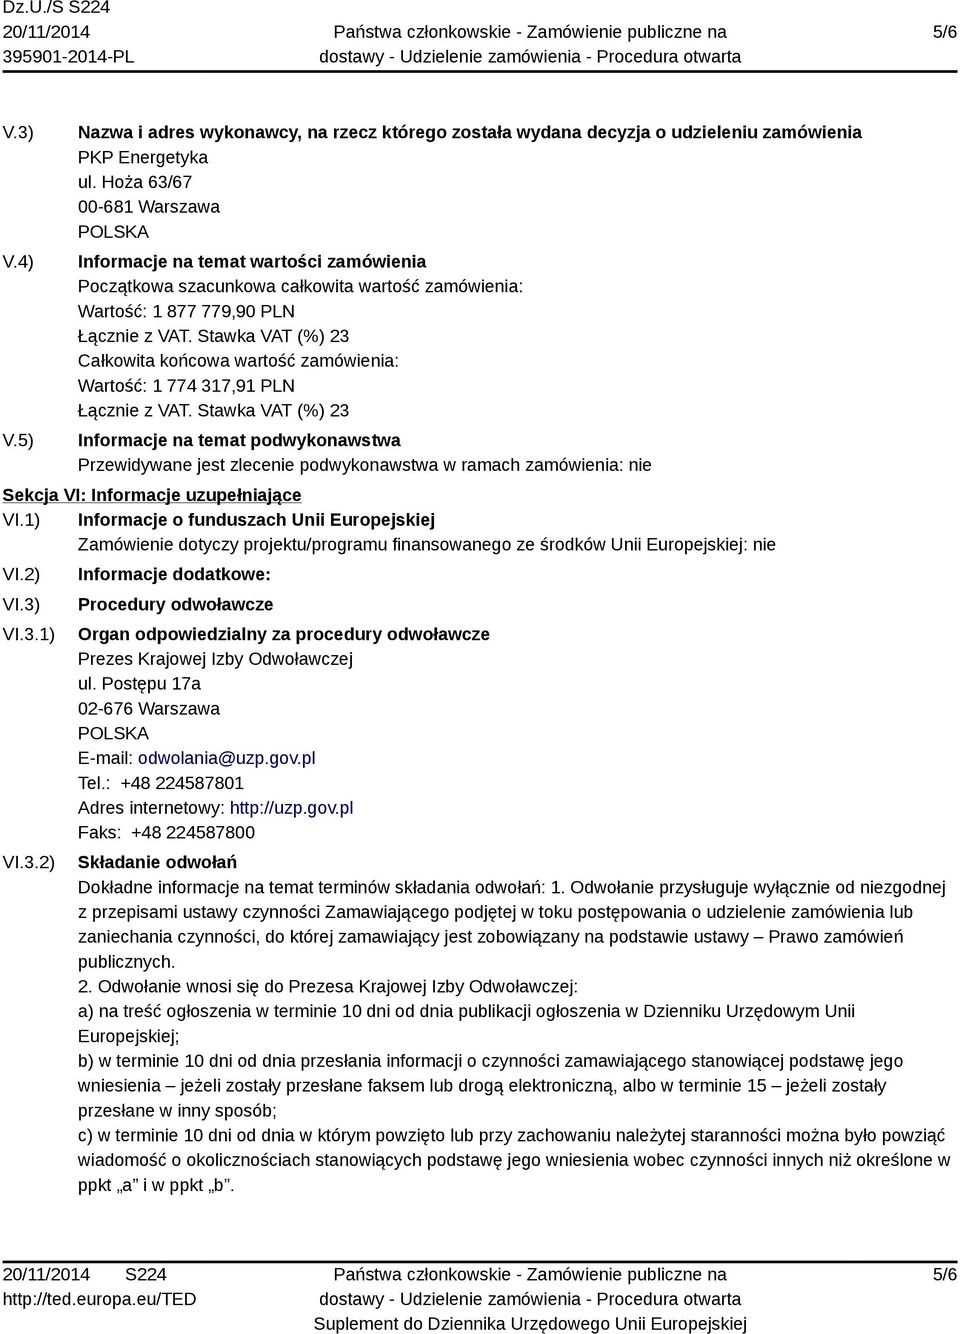 317,91 PLN Informacje na temat podwykonawstwa Przewidywane jest zlecenie podwykonawstwa w ramach zamówienia: nie Sekcja VI: Informacje uzupełniające VI.